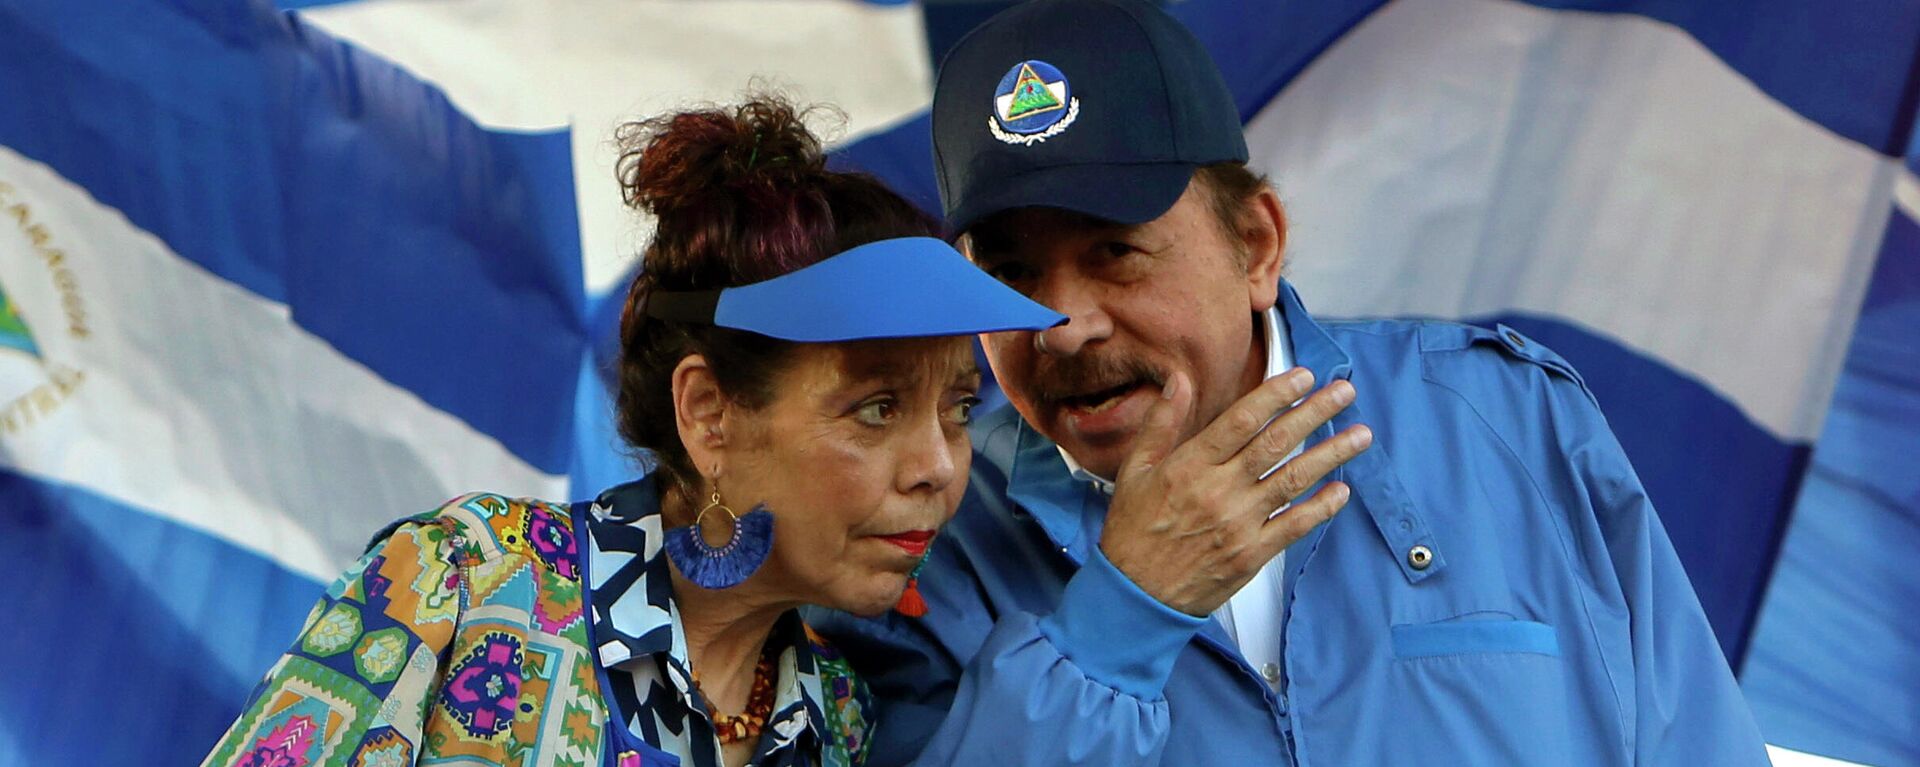 Daniel Ortega, presidente de Nicargua, y la vicepresidenta, Rosario Murillo - Sputnik Mundo, 1920, 08.11.2021